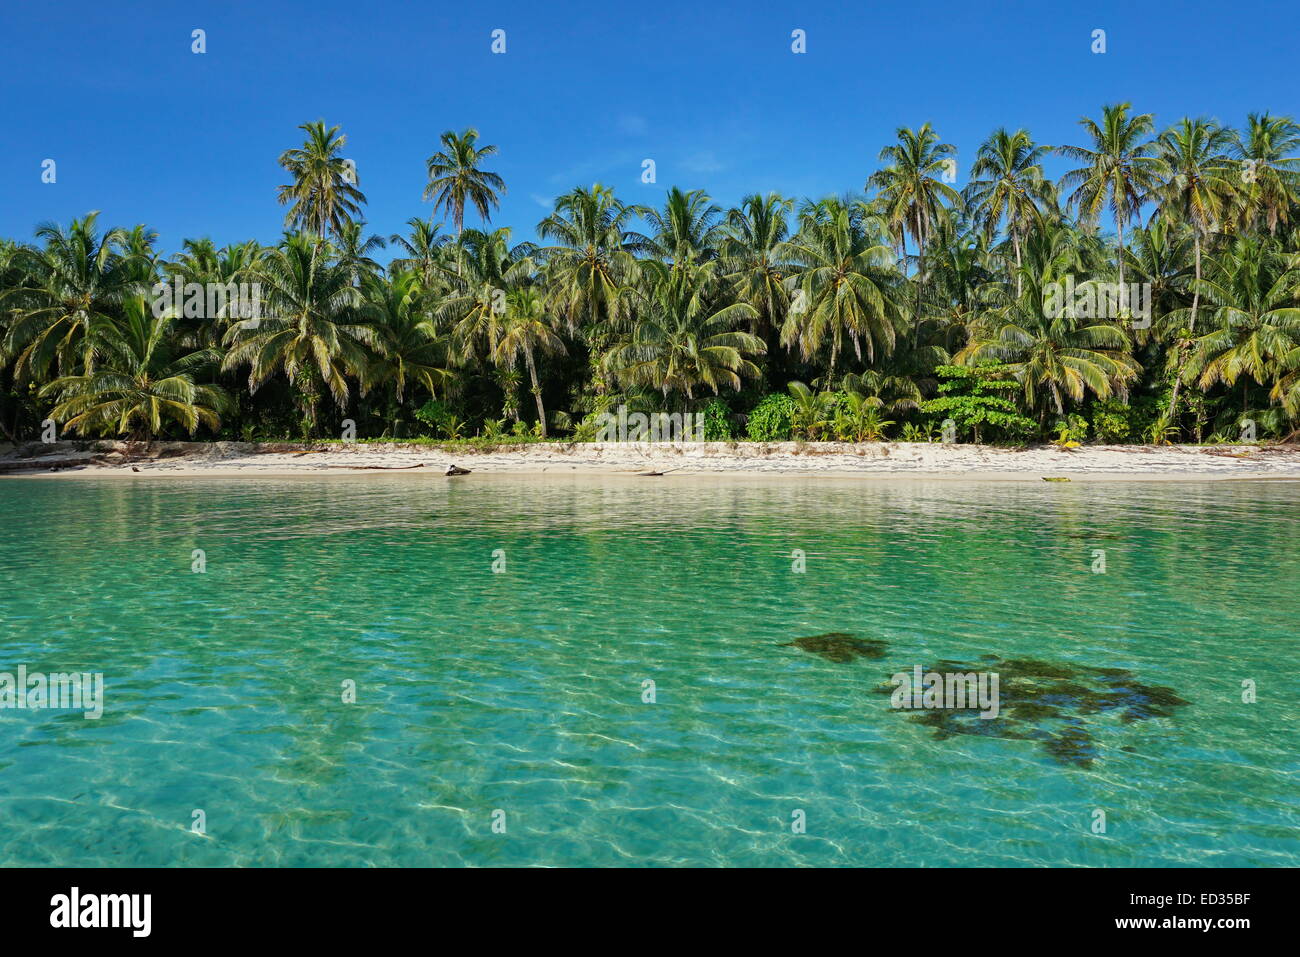 Côte tropicale intacte d'une île de la mer des Caraïbes avec une végétation luxuriante, cayos Zapatilla, Bocas del Toro, PANAMA Banque D'Images